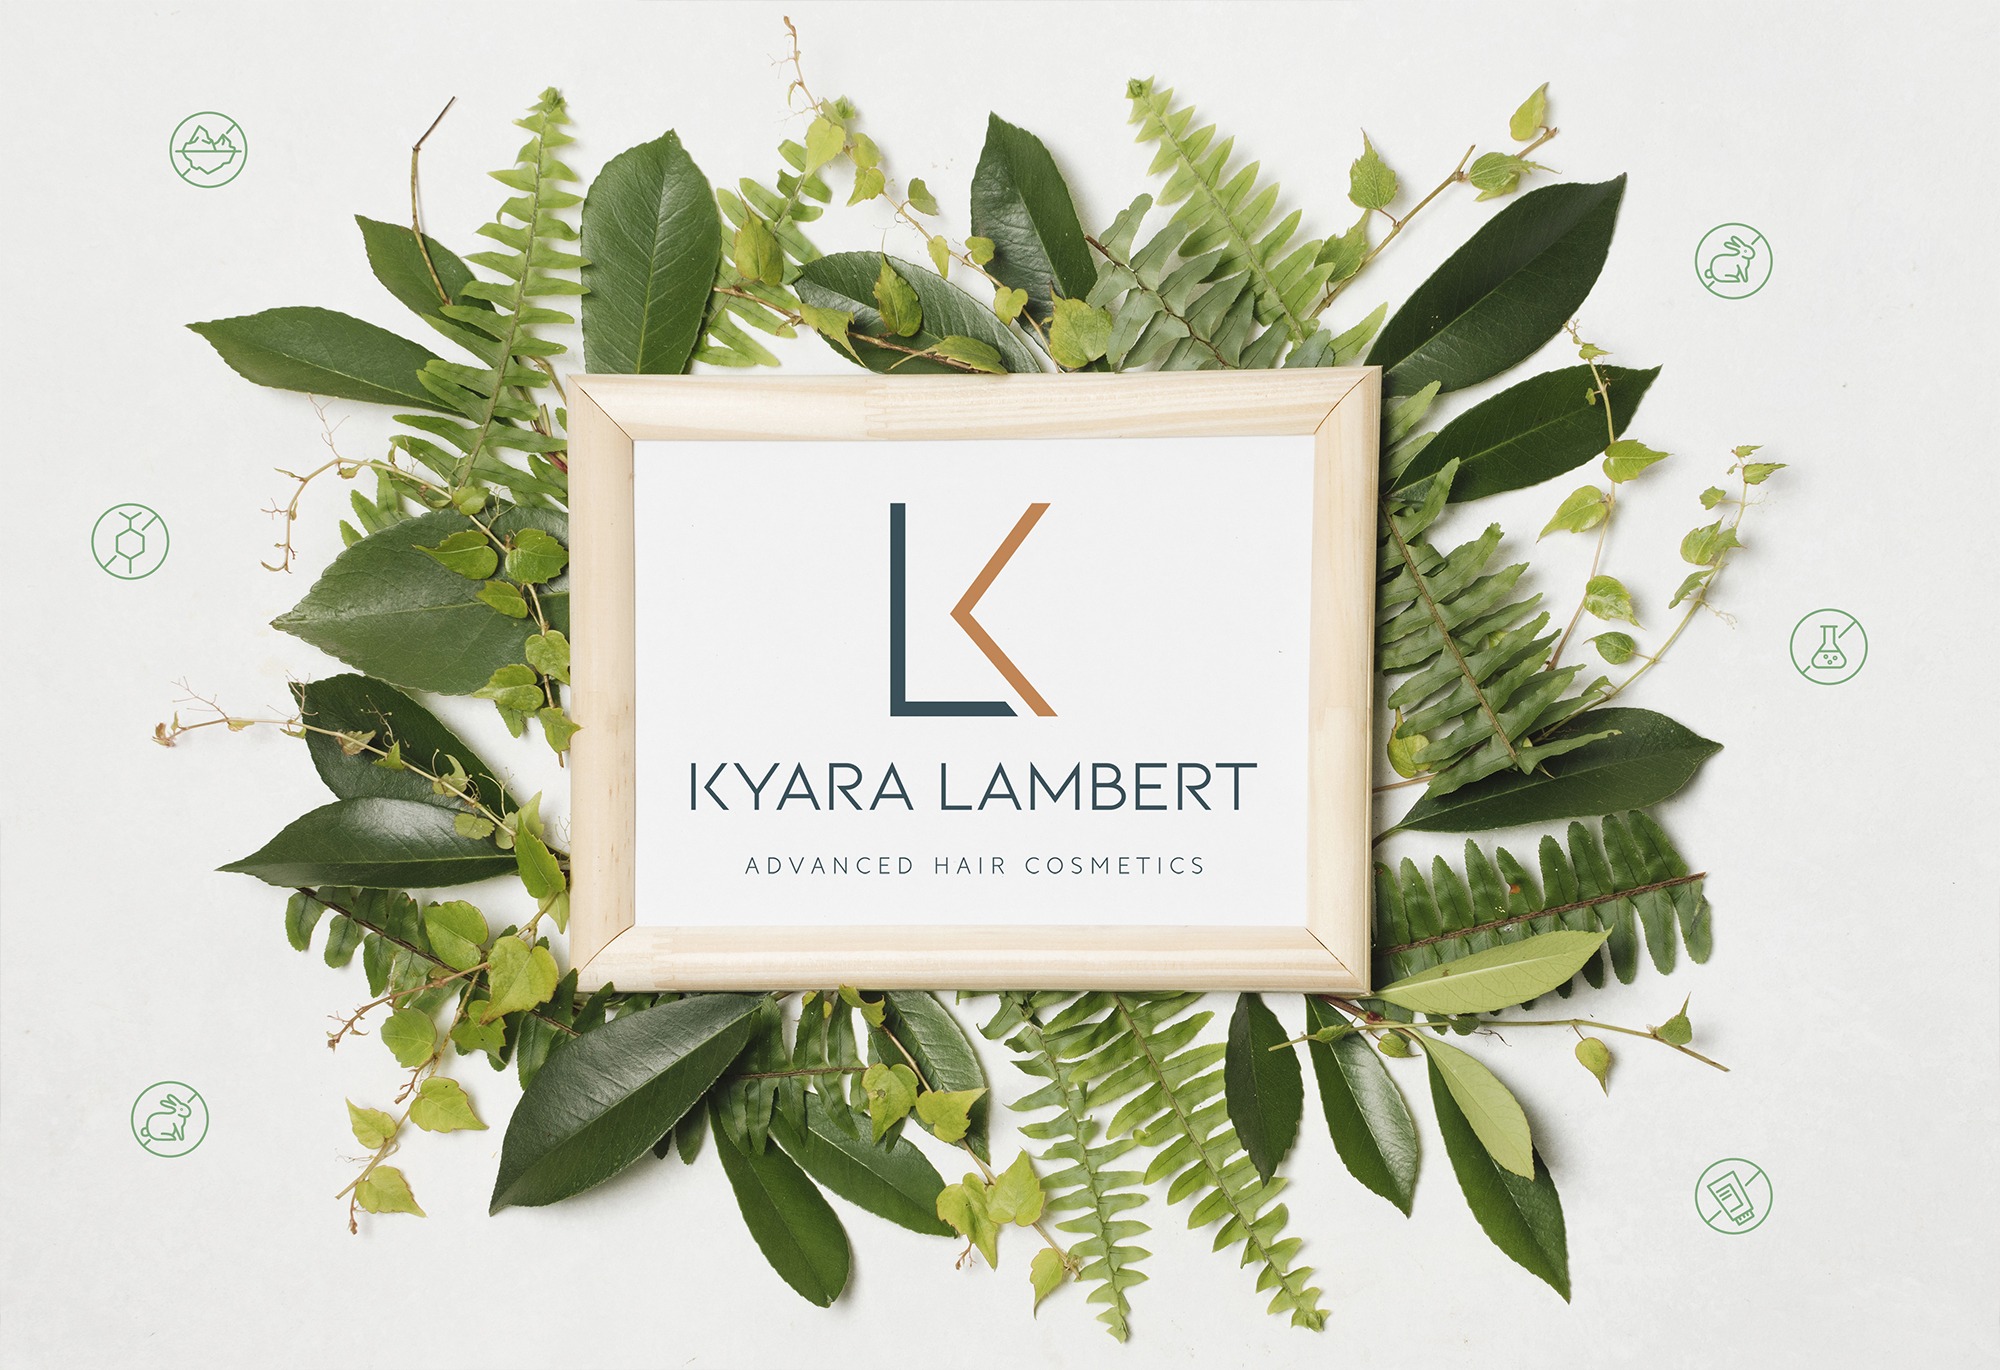 La Revolución Natural del Cuidado Capilar de Kyara Lambert llega a los estilistas con sus tratamientos veganos